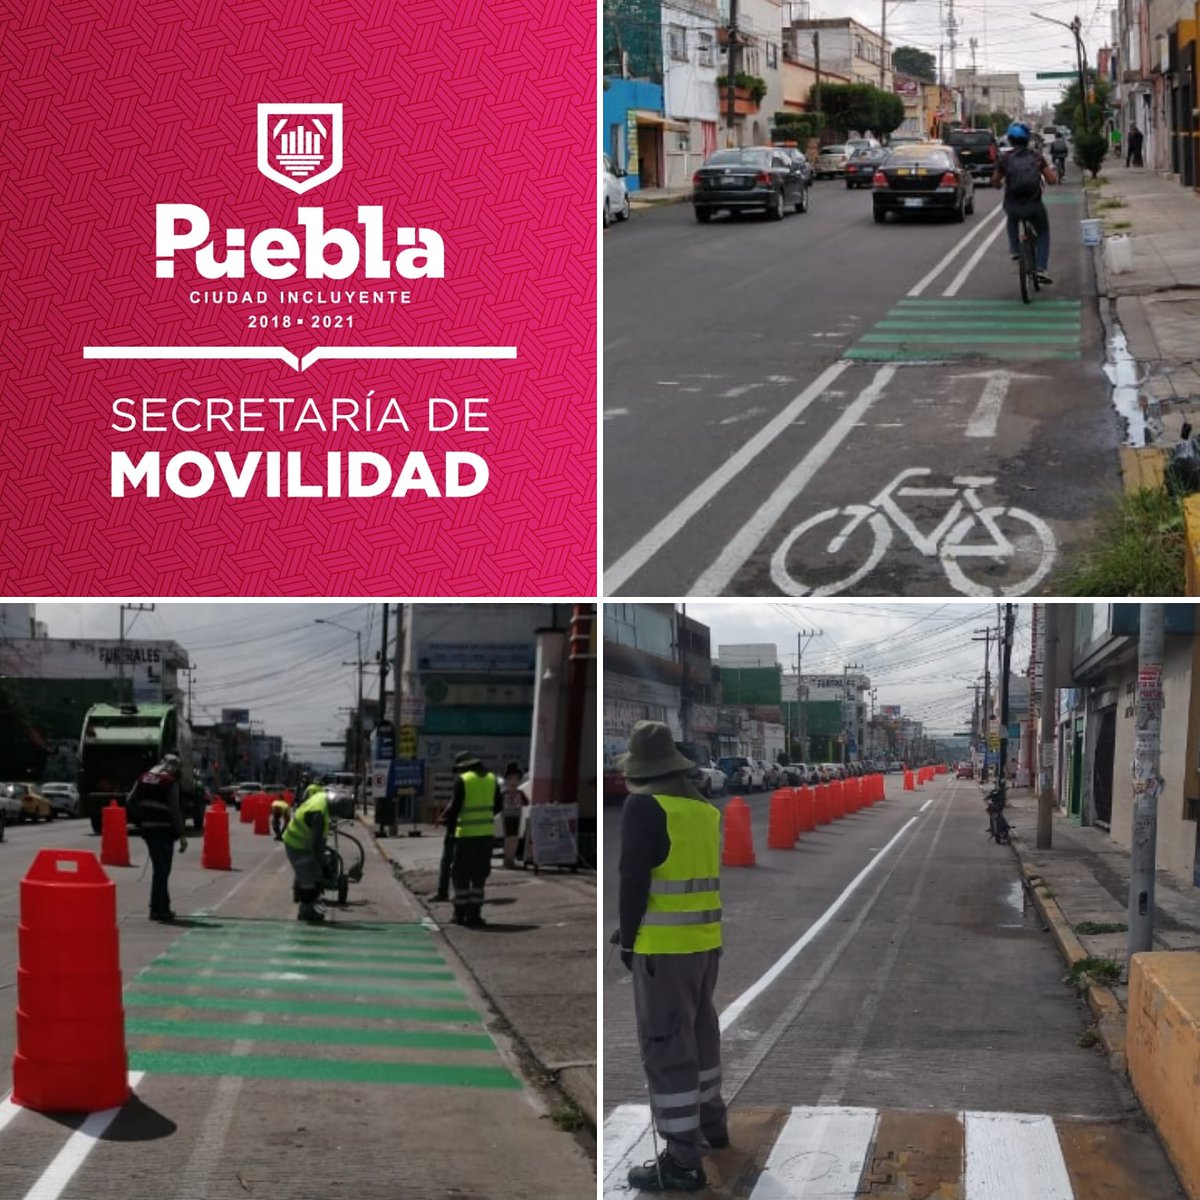 cont'd: Update from Puebla/Mexico via  @MovilidadPue : "Seguimos conectando las  #CiclovíasEmergentes  Nuestro equipo de cuadrillas, realiza trabajos de señalamiento horizontal en la 25 poniente entre 11 sur y 9 sur.